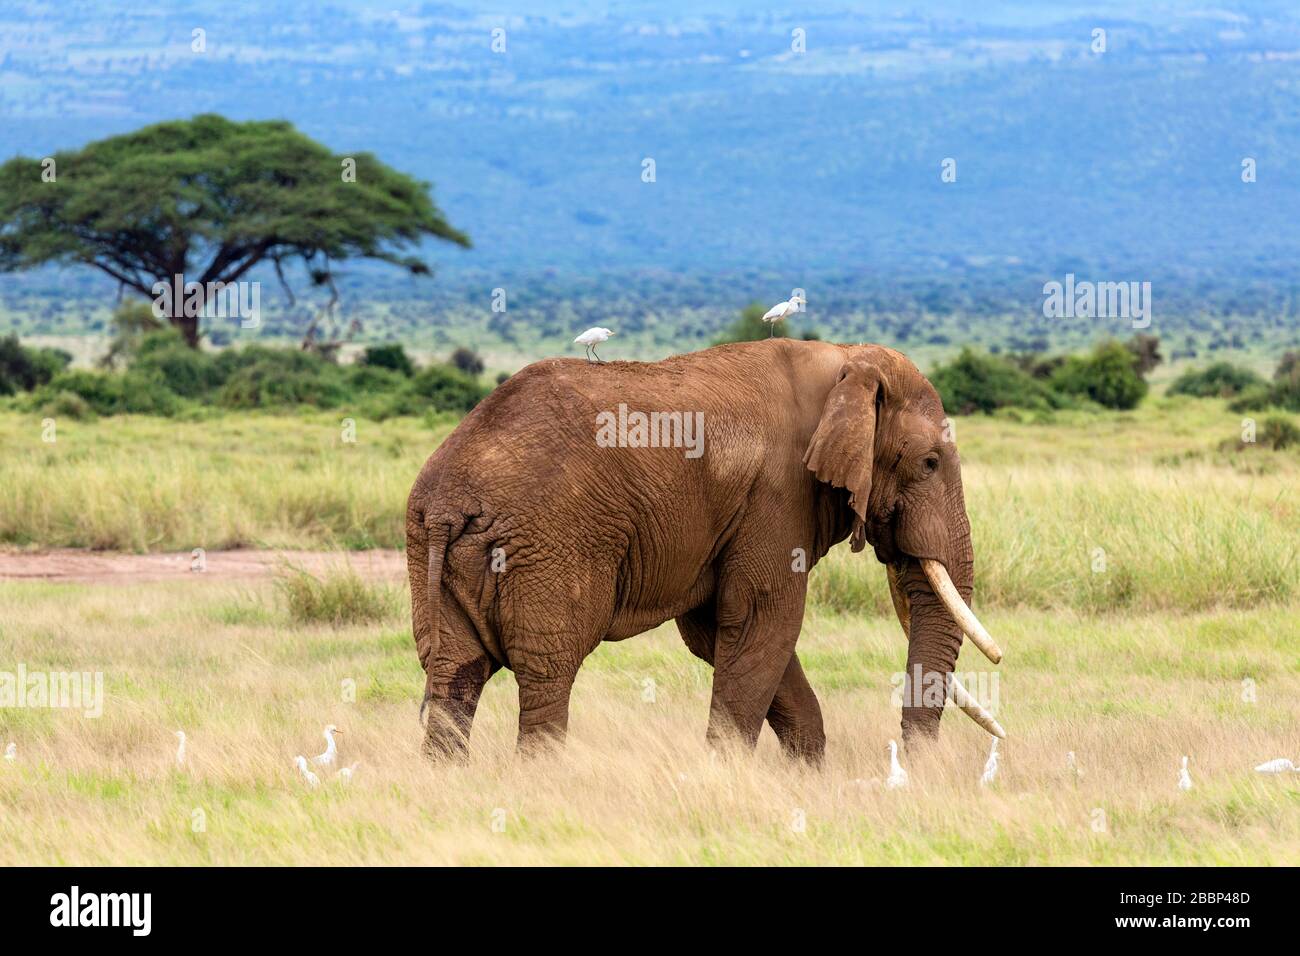 Éléphant de brousse africain (Loxodonta africana) entouré d'aigrettes, Parc national d'Amboseli, Kenya, Afrique Banque D'Images